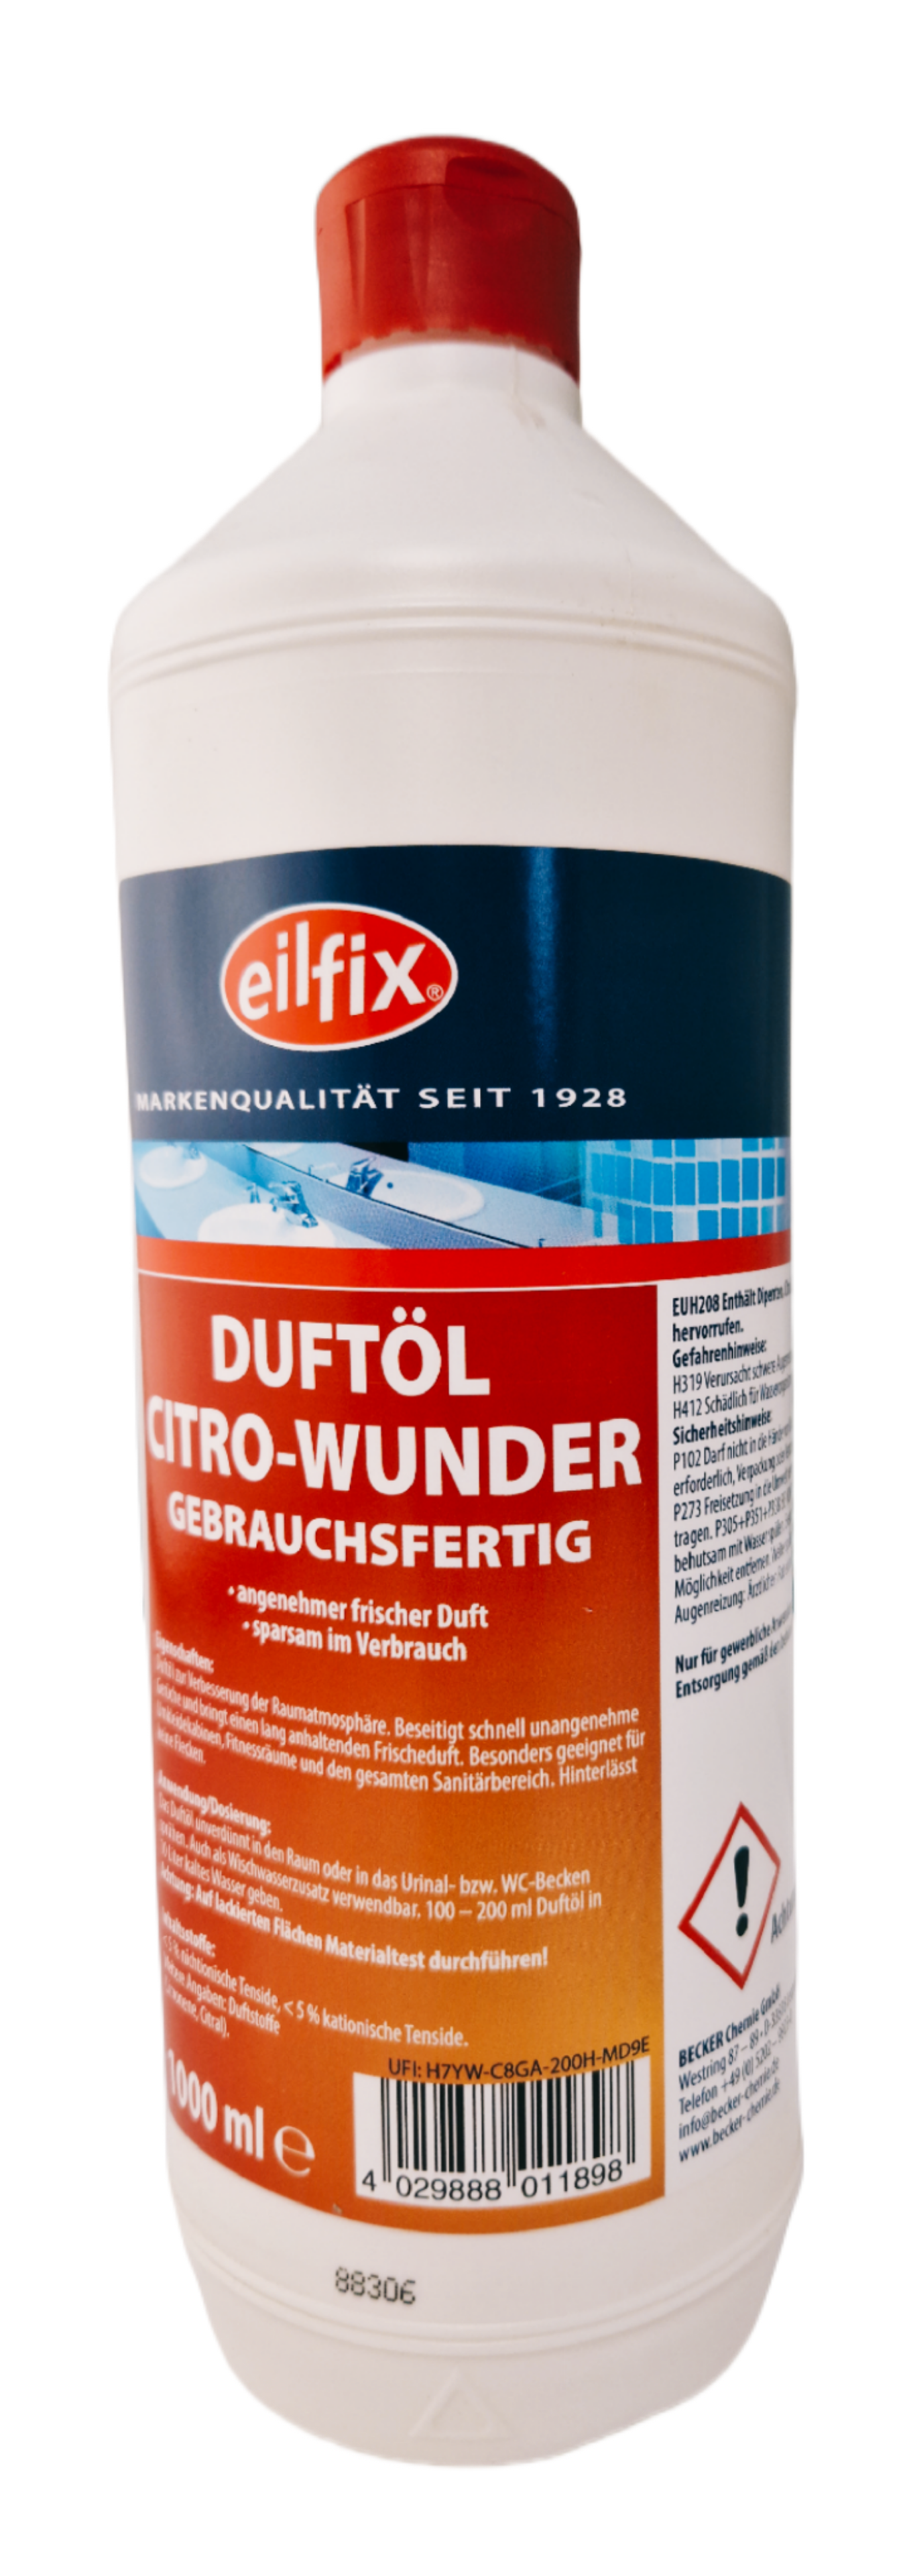 Eilfix - Duftöl Citro-Wunder 1 Liter